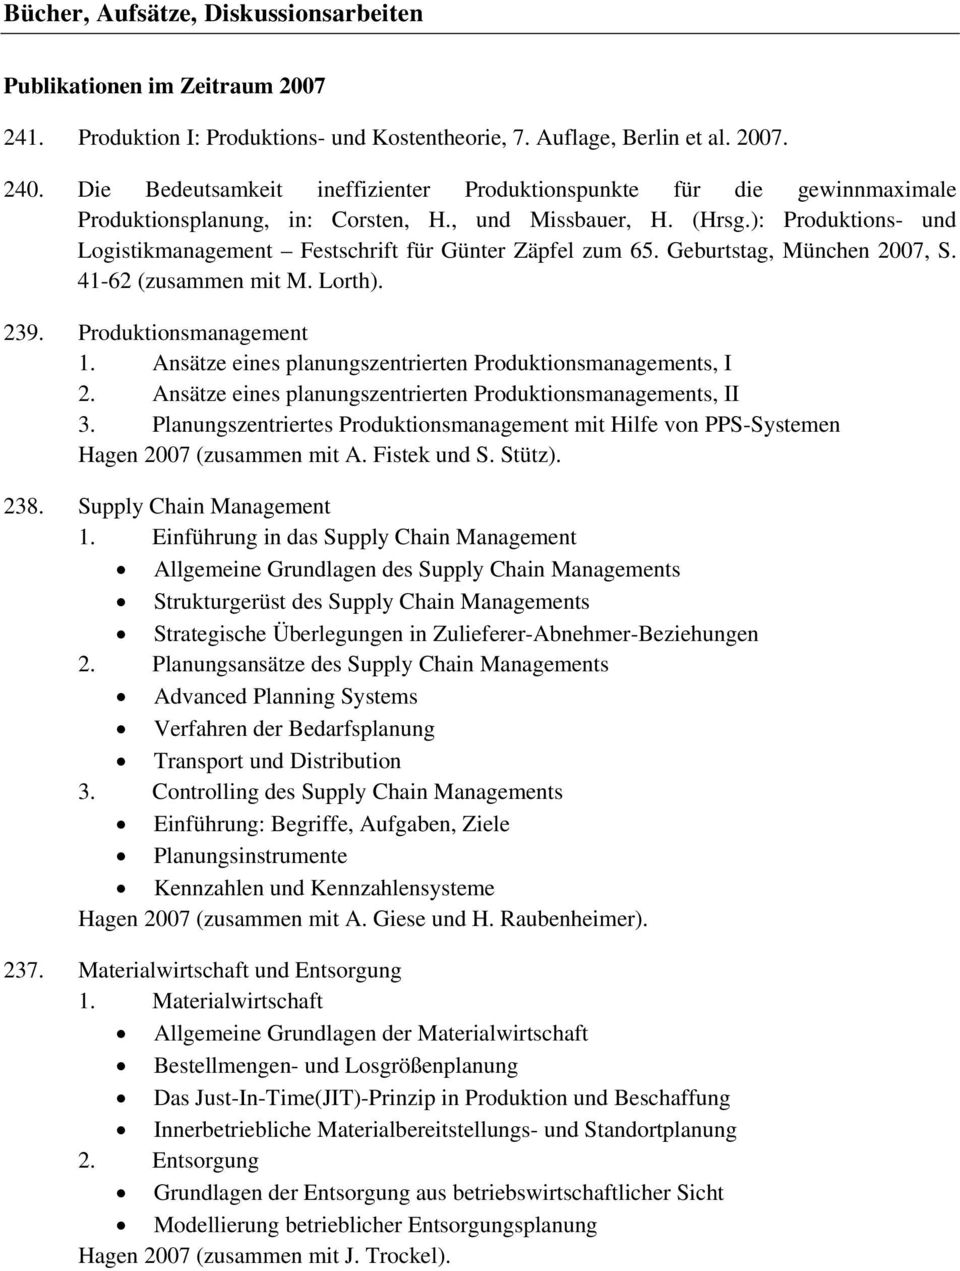 ): Produktions- und Logistikmanagement Festschrift für Günter Zäpfel zum 65. Geburtstag, München 2007, S. 41-62 (zusammen mit M. Lorth). 239. Produktionsmanagement 1.